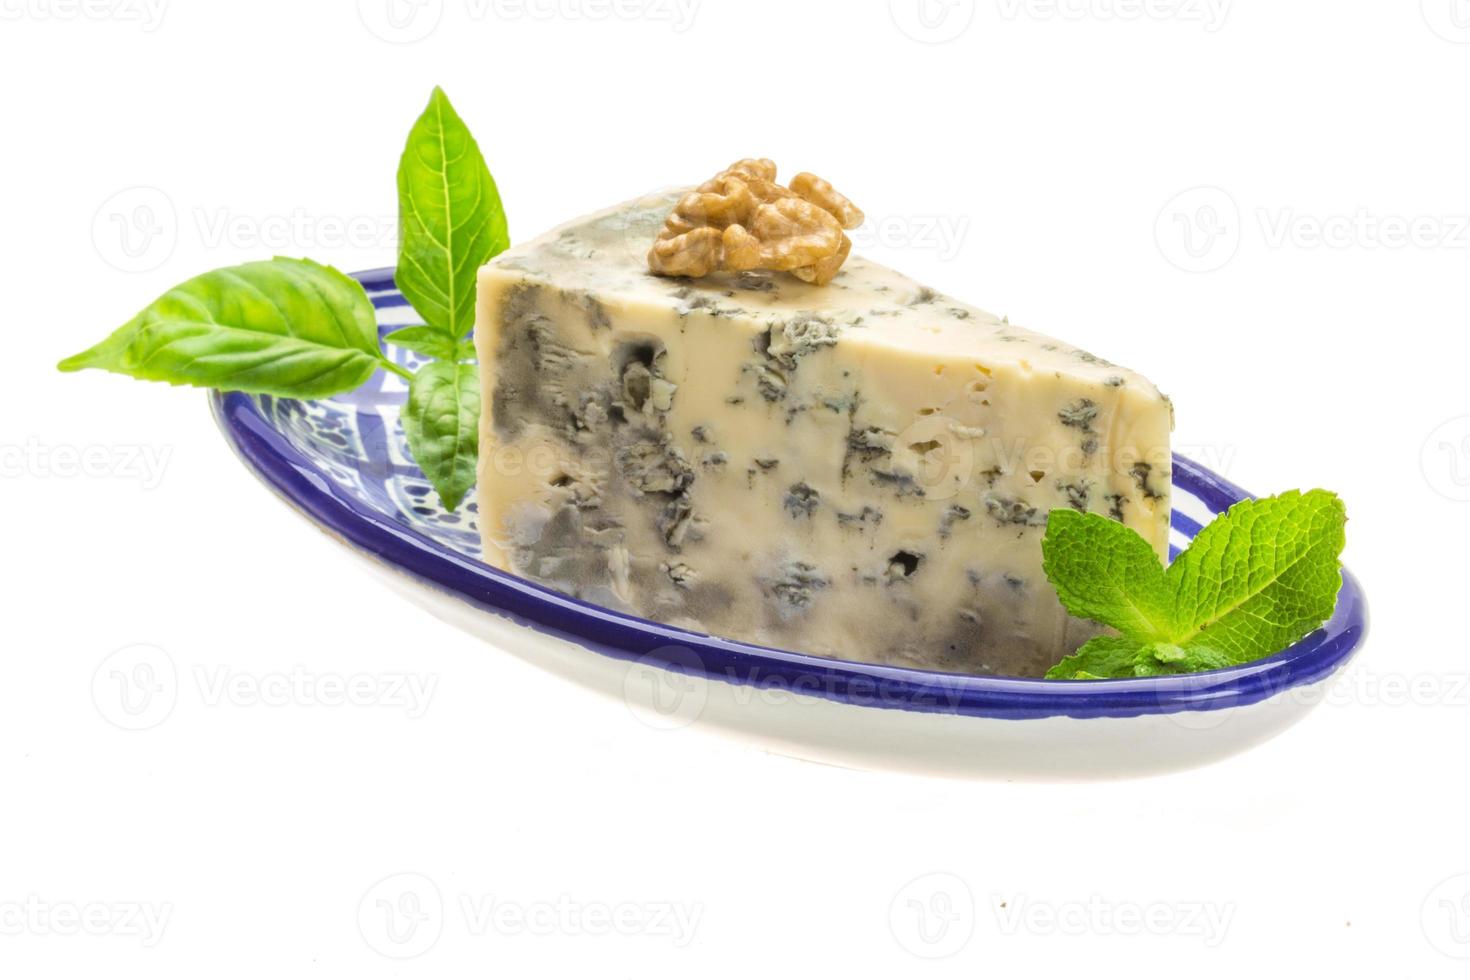 dor blauwe kaas met kruiden, noten en honing foto